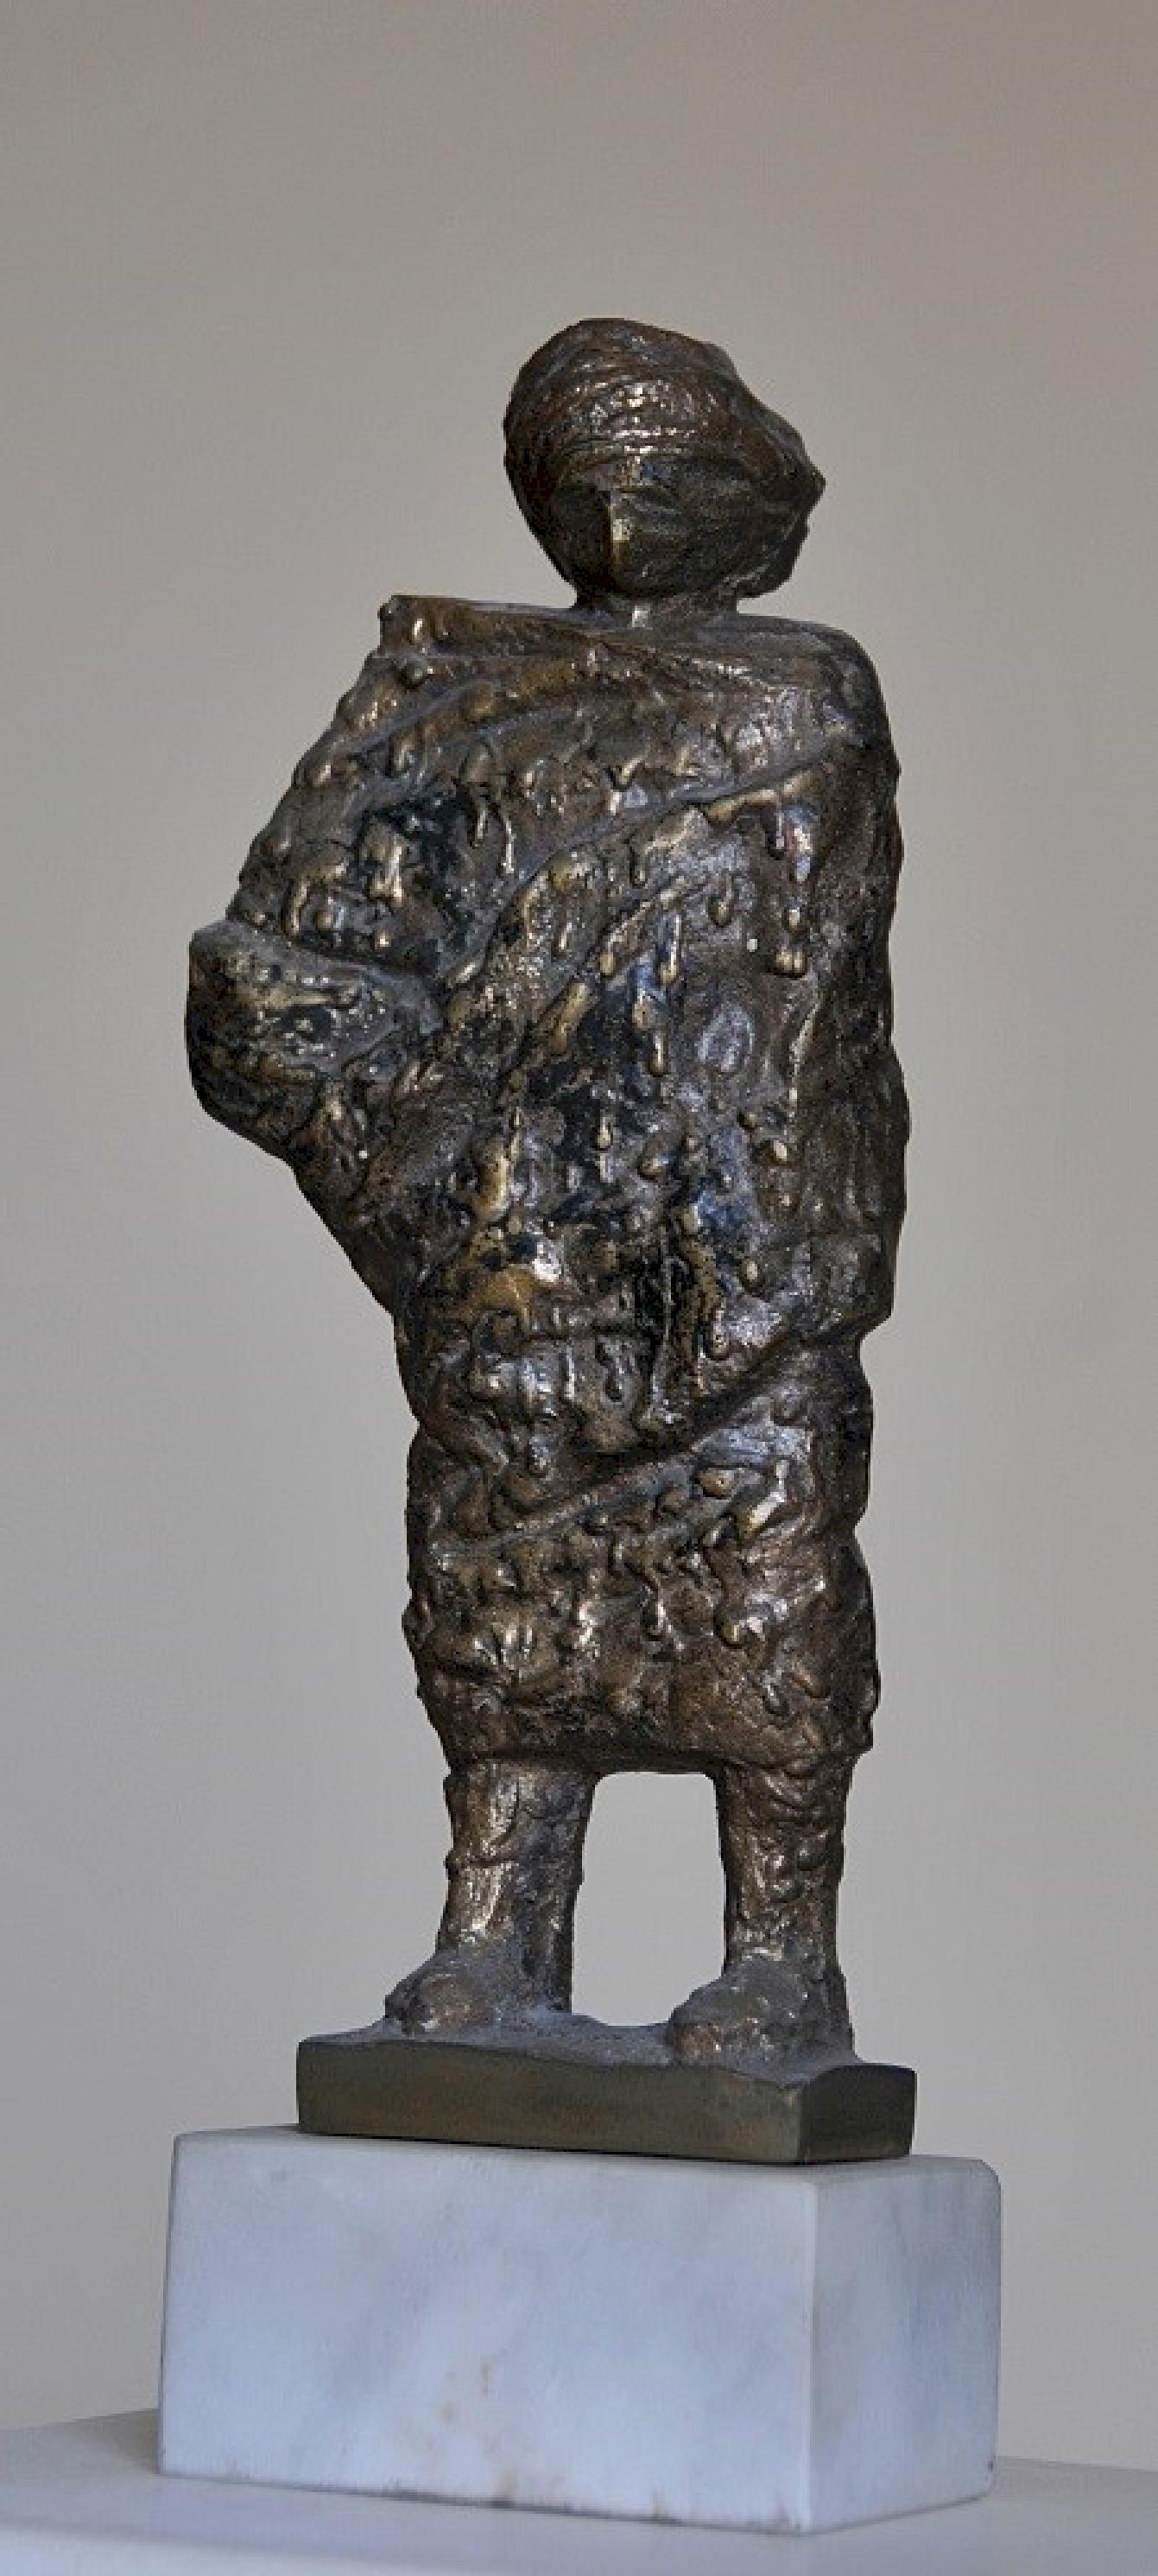 Sculpture en bronze "Robed I" 11" x 4" x 2" inch by Sarkis Tossonian

Sarkis Tossoonian est né à Alexandrie en 1953. Il est diplômé de la Faculté des Beaux-Arts/Sculpture en 1979. Il a commencé à exposer dans des expositions individuelles et